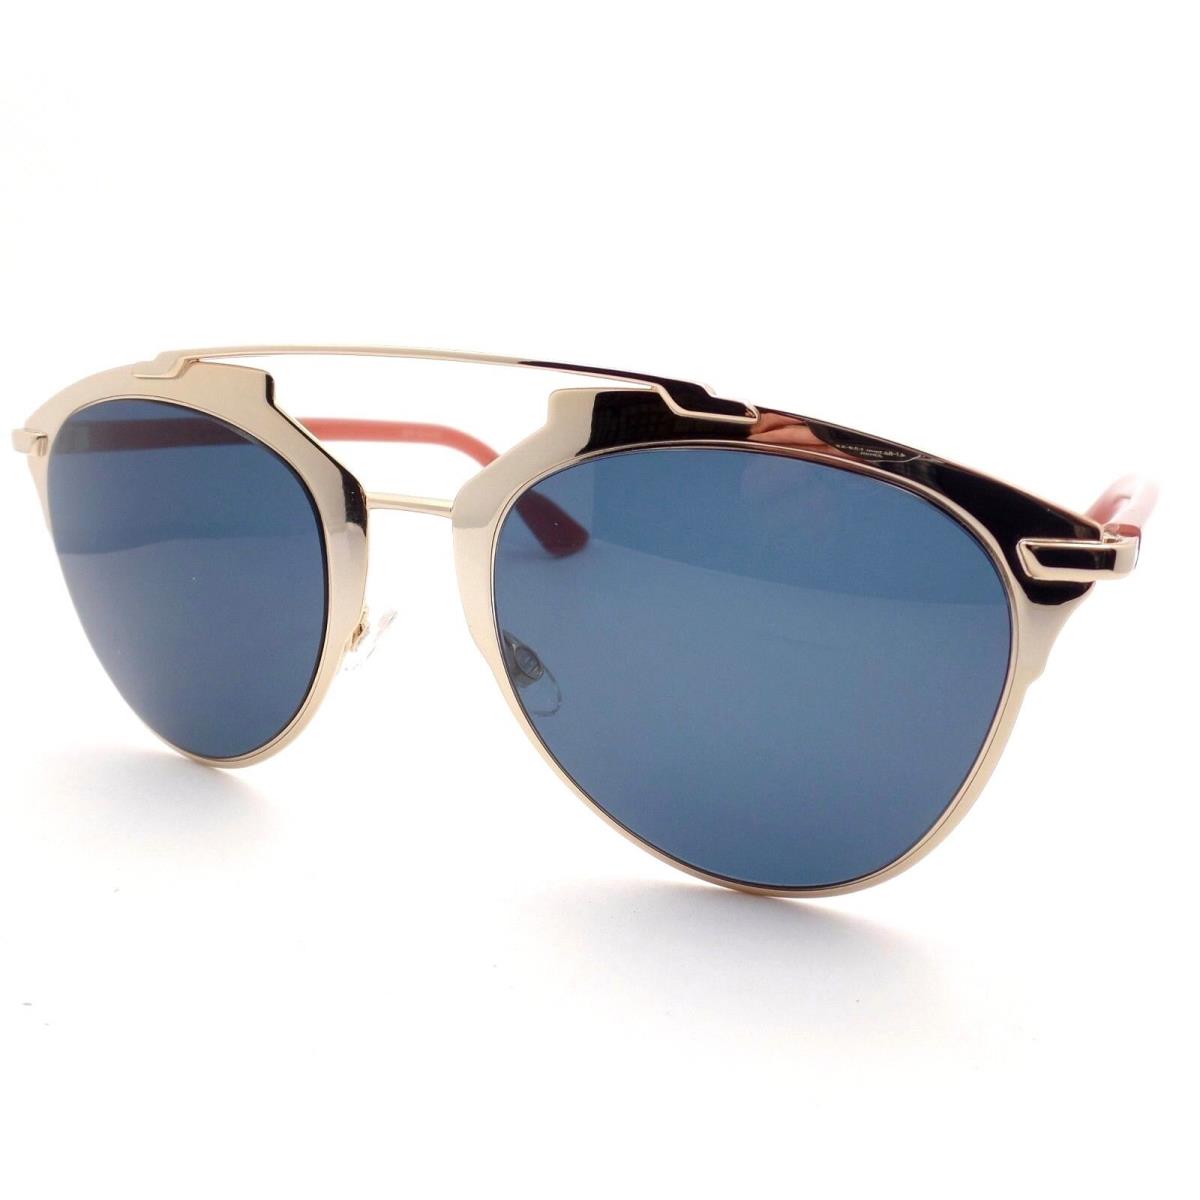 Christian Dior Reflected Tuz KU Rose Gold Blue Tuzku Sunglasses - Blue Avio Frame, Blue Lens